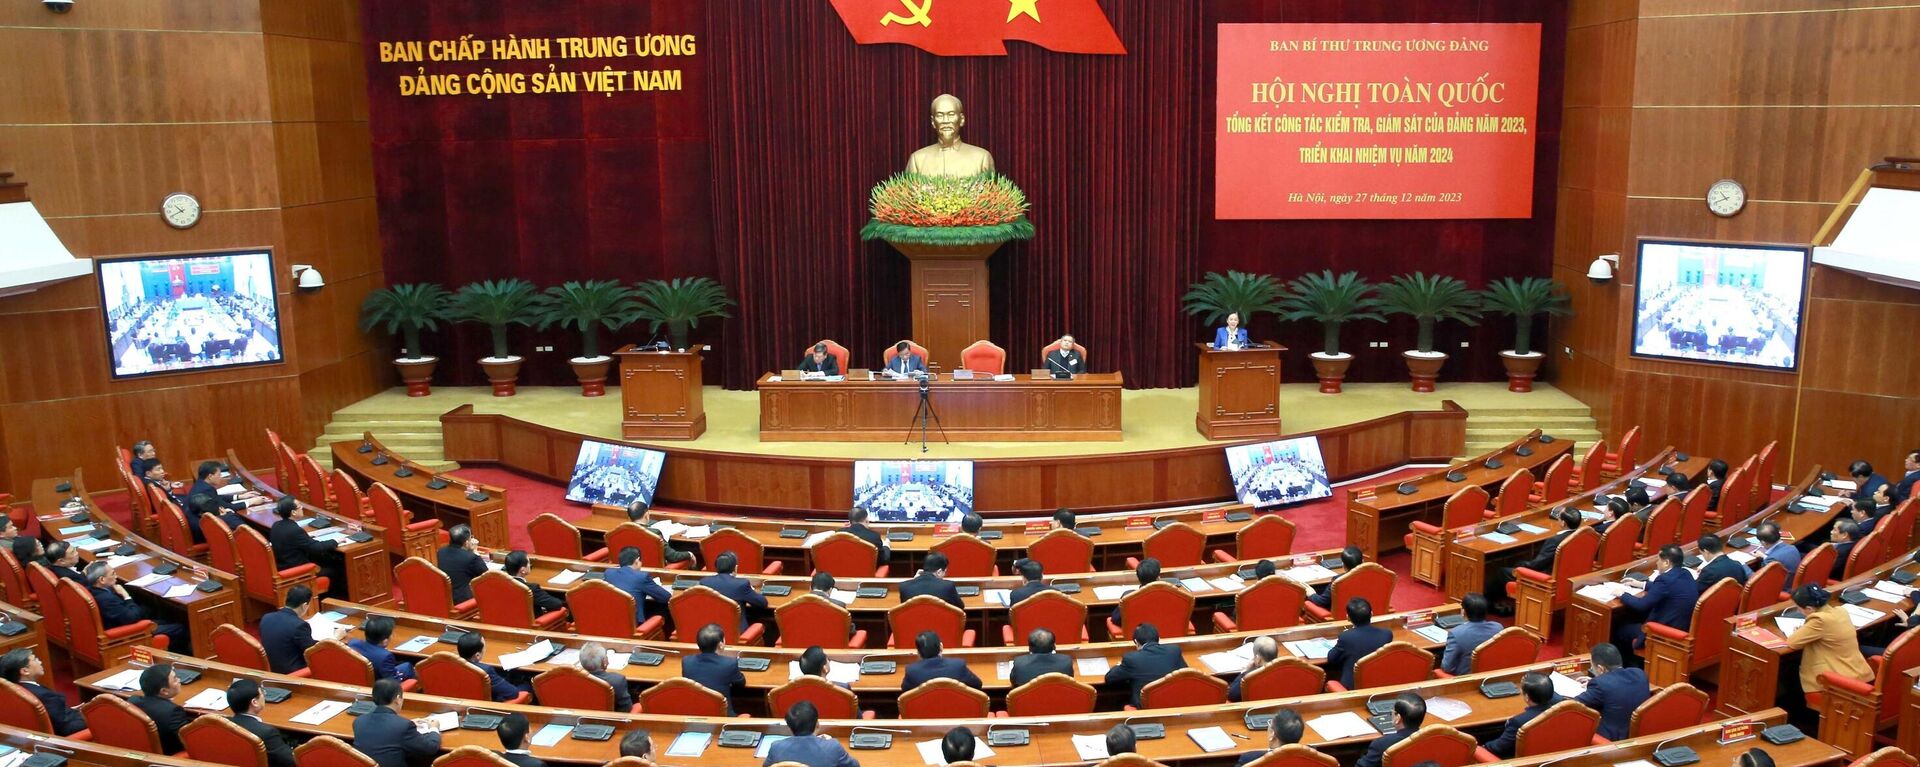 Hội nghị toàn quốc tổng kết công tác kiểm tra, giám sát của Đảng năm 2023, triển khai nhiệm vụ năm 2024 - Sputnik Việt Nam, 1920, 27.12.2023